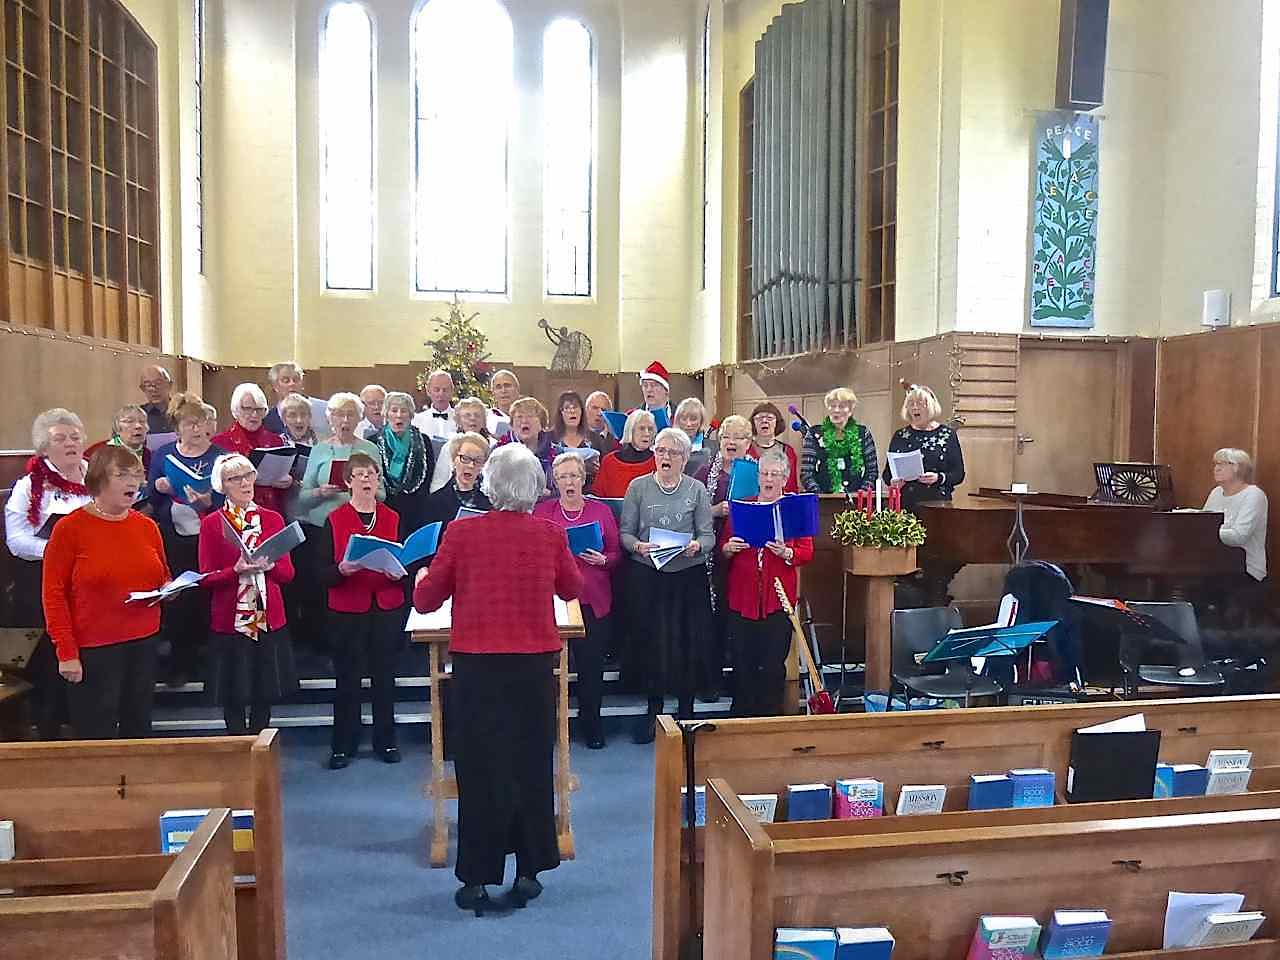 2017 Christmas: the Hallelujah Chorus